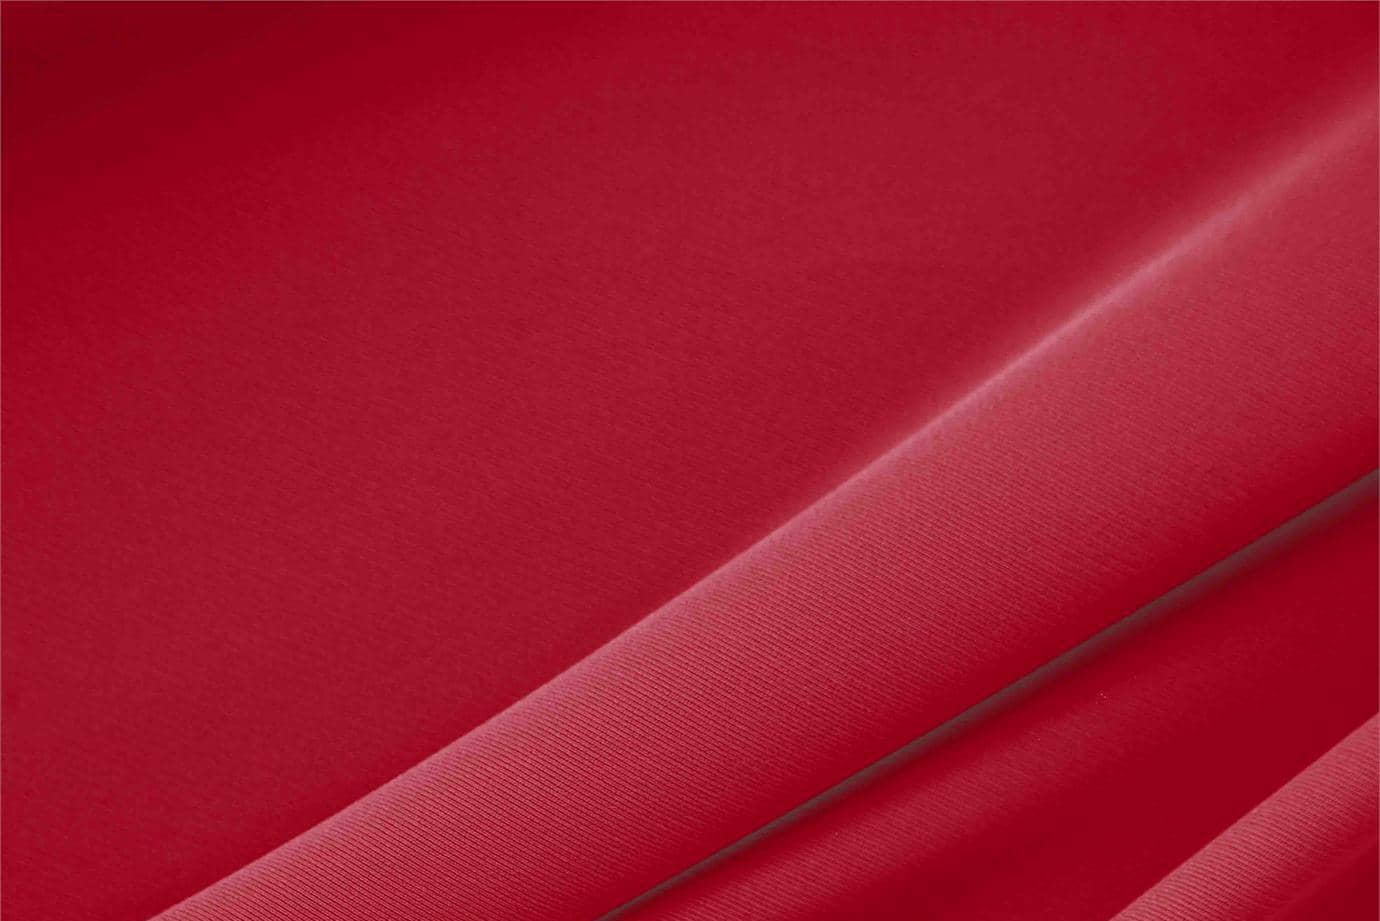 Tessuto Microfibra Poliestere Leggera Rosso Ruggine in Poliestere per abbigliamento